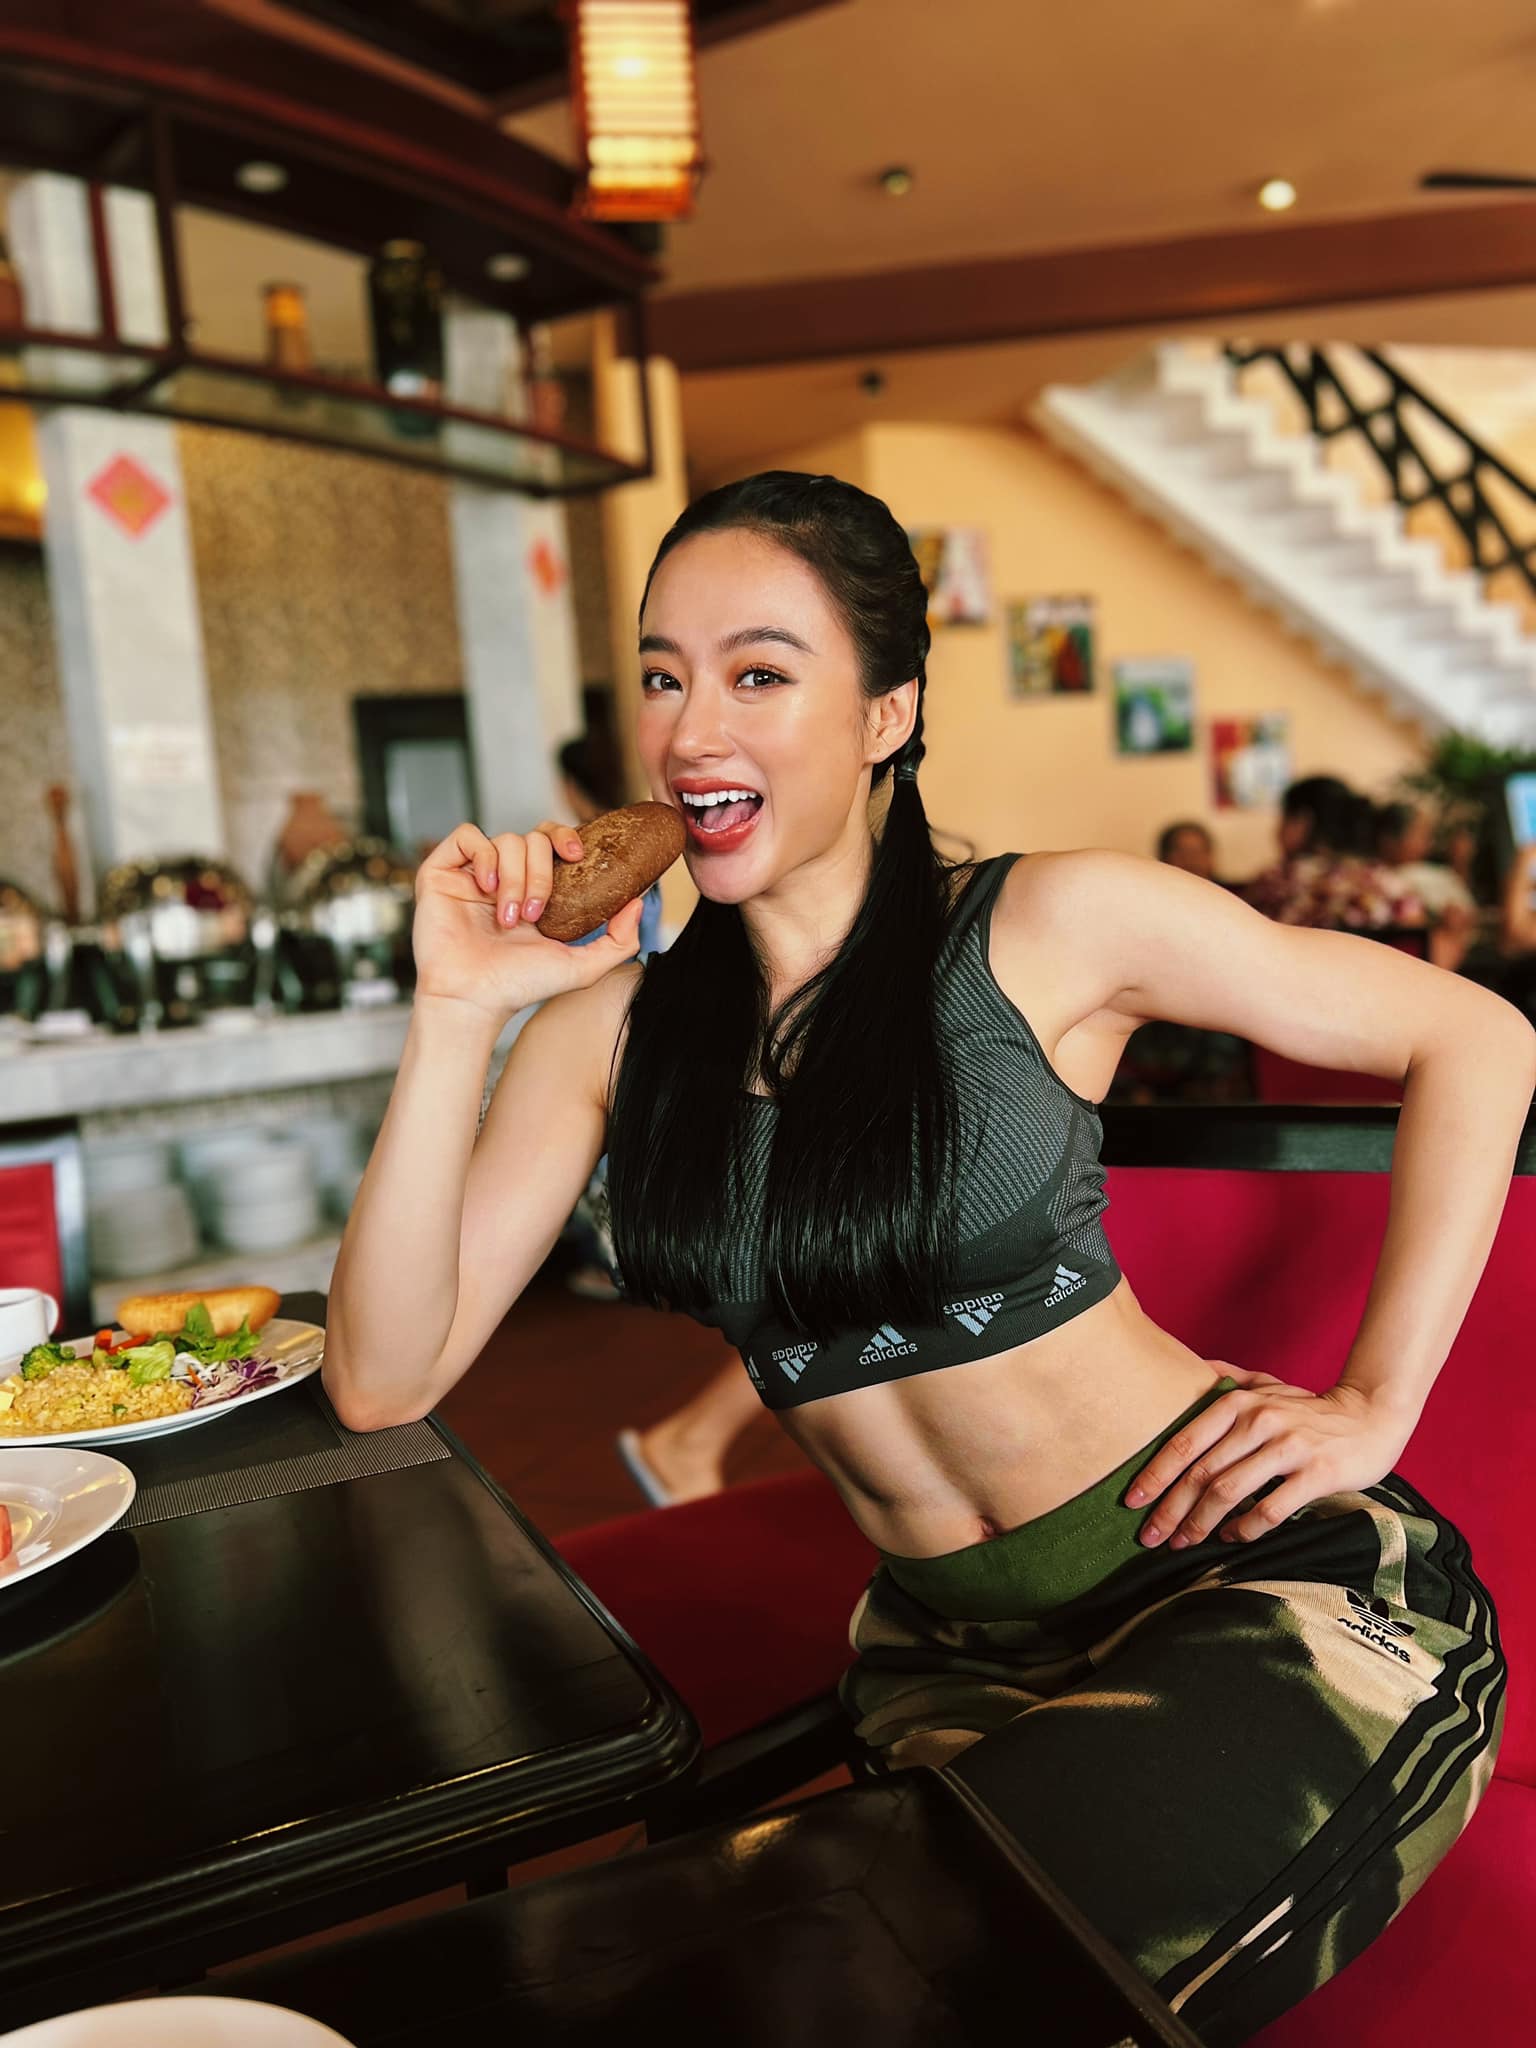 Angela Phương Trinh đăng clip múa bụng bốc lửa trên TikTok, lộ rõ cơ bụng 6 múi săn chắc - Ảnh 4